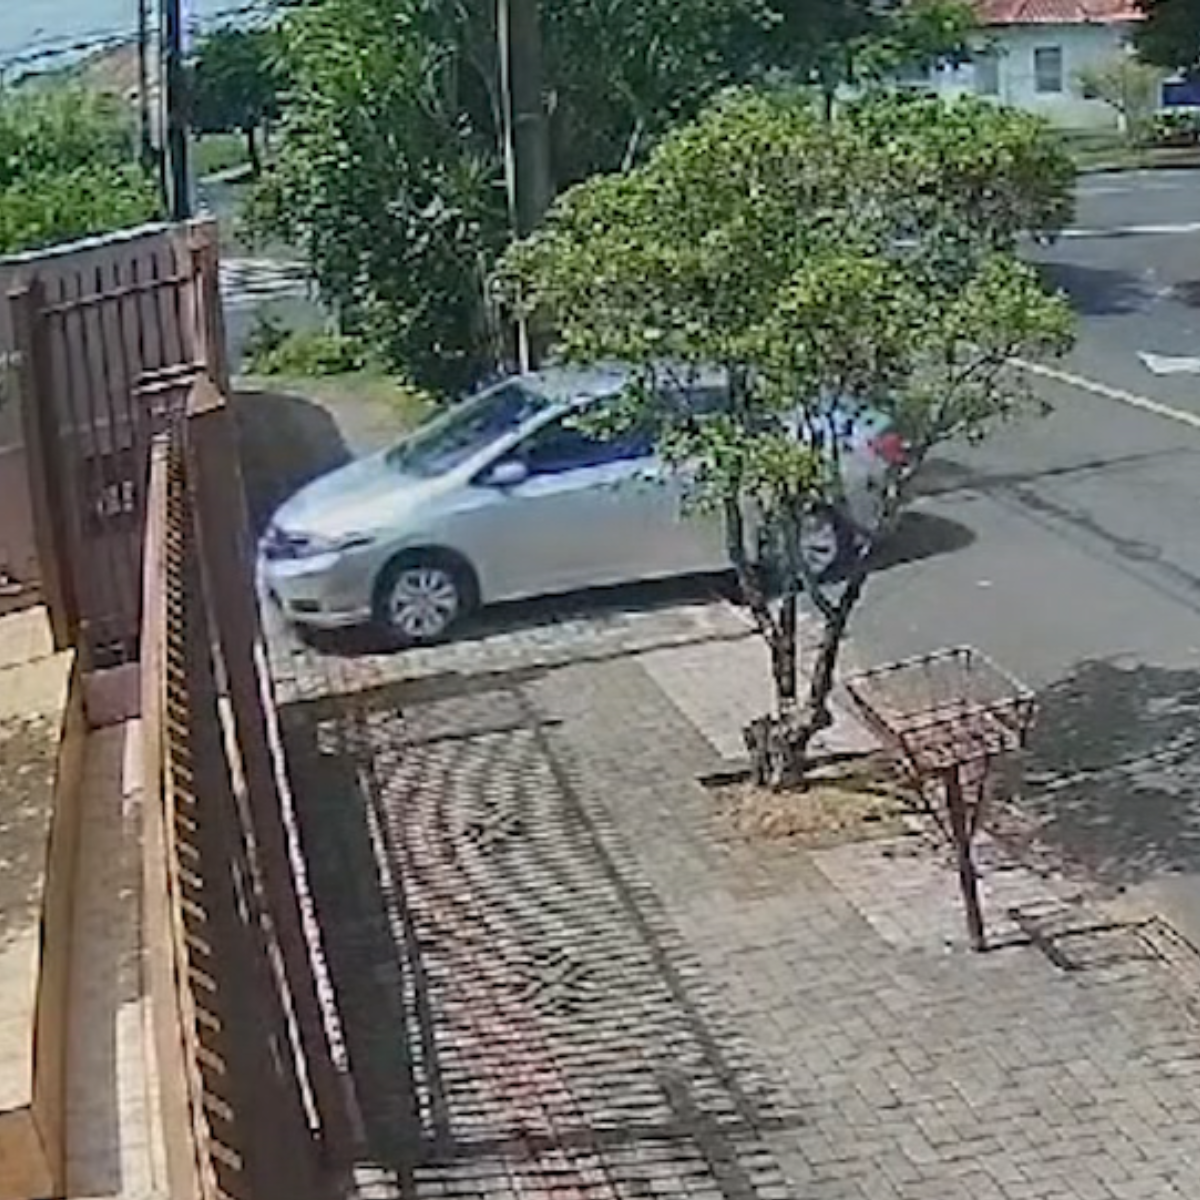  vítima de assalto londrina teve que ensinar ladrão a dirigir carro 